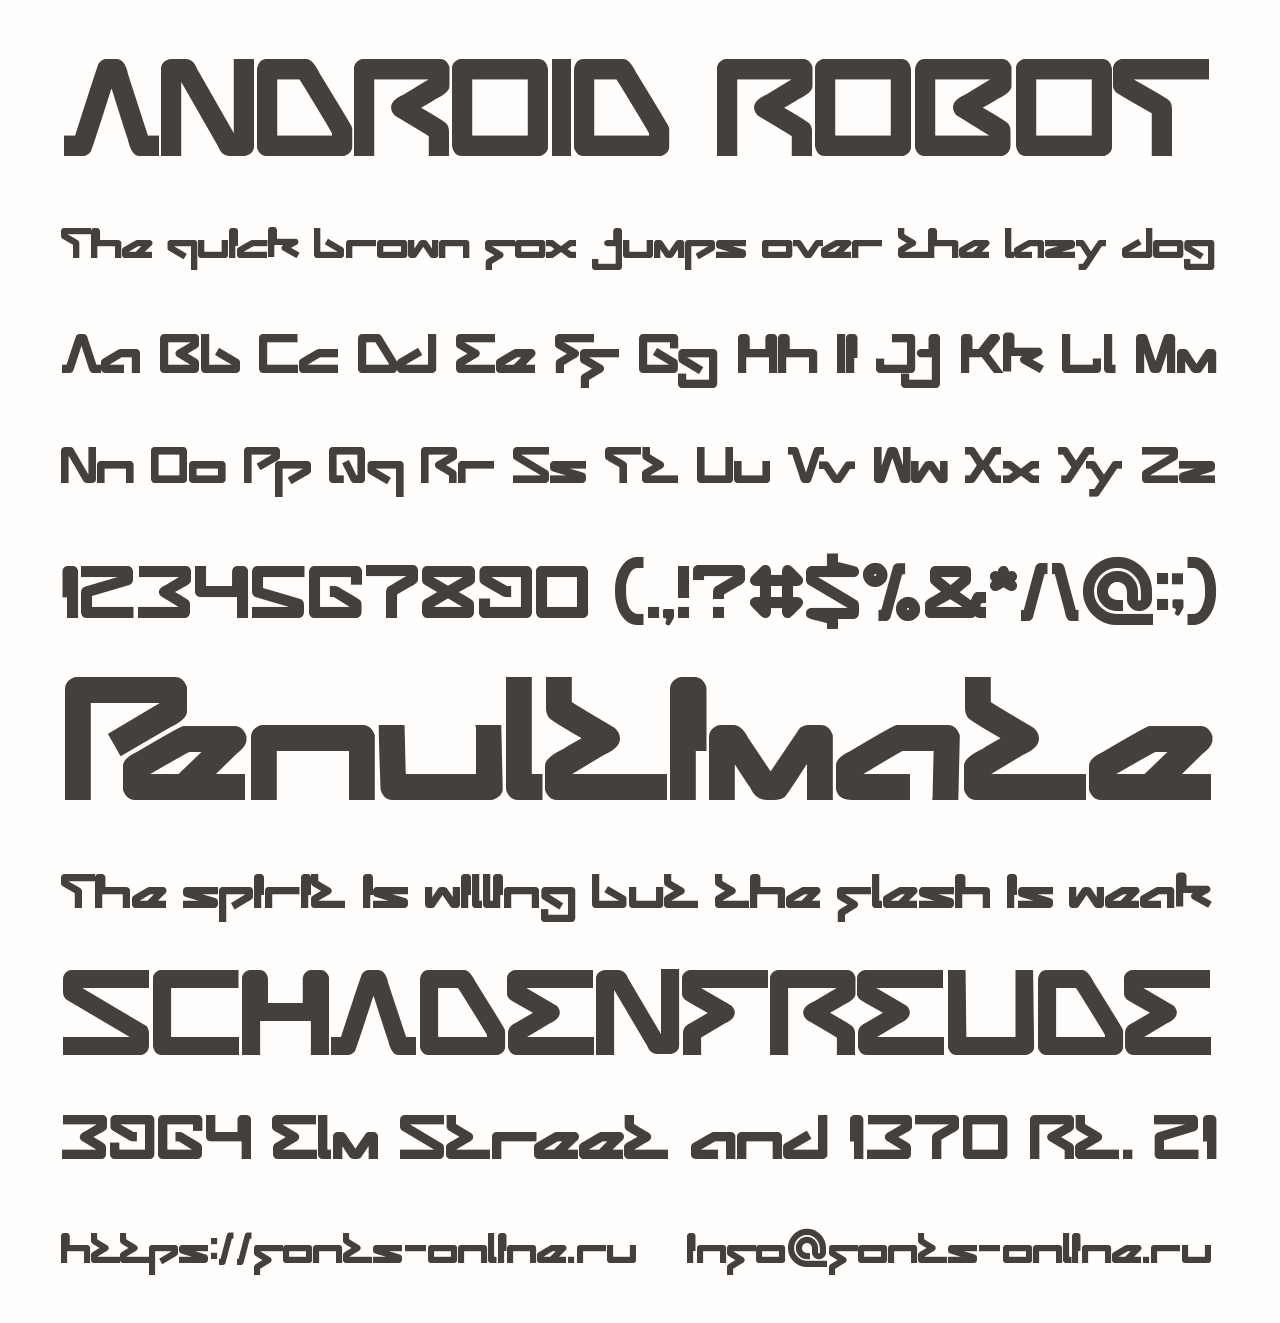 Шрифт андроид. Шрифт Android. Шрифт робот. D Robot font. Шрифты андроид 12